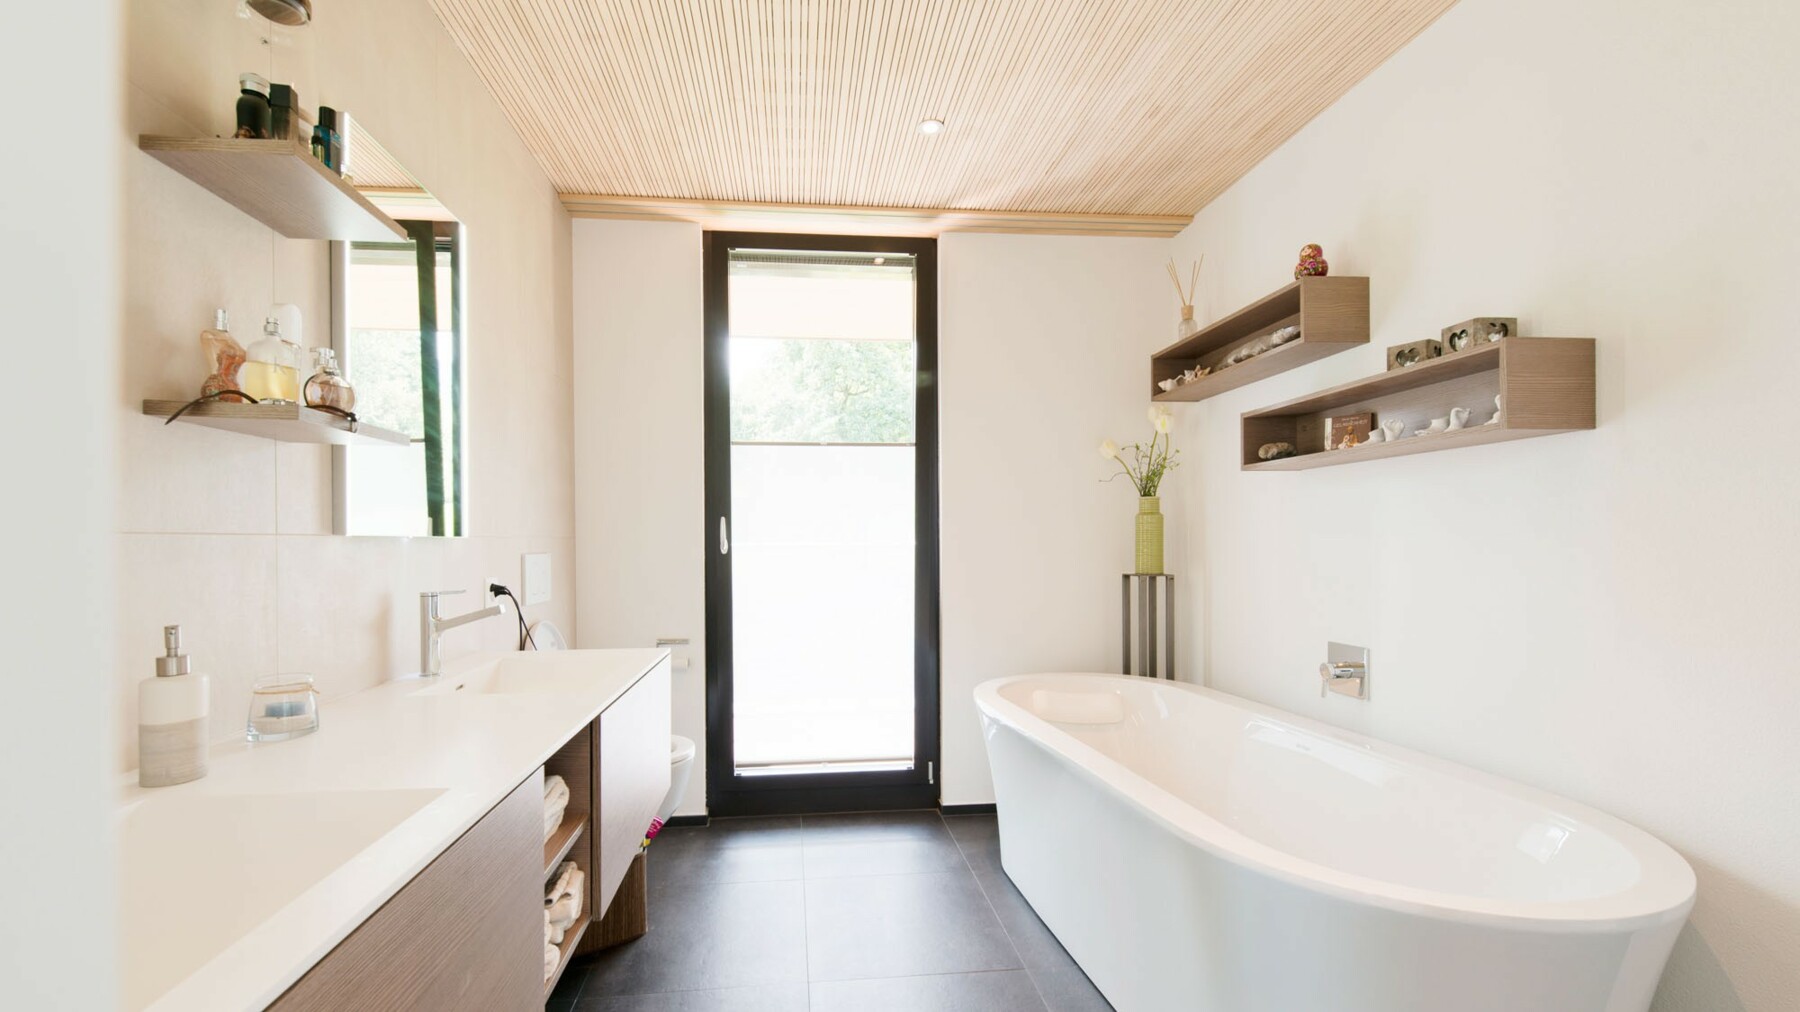 Deckenverkleidung aus Holz im nature-Profil im Bad in einem Einfamilienhaus in Alpnach sorgt für gute Raumakustik